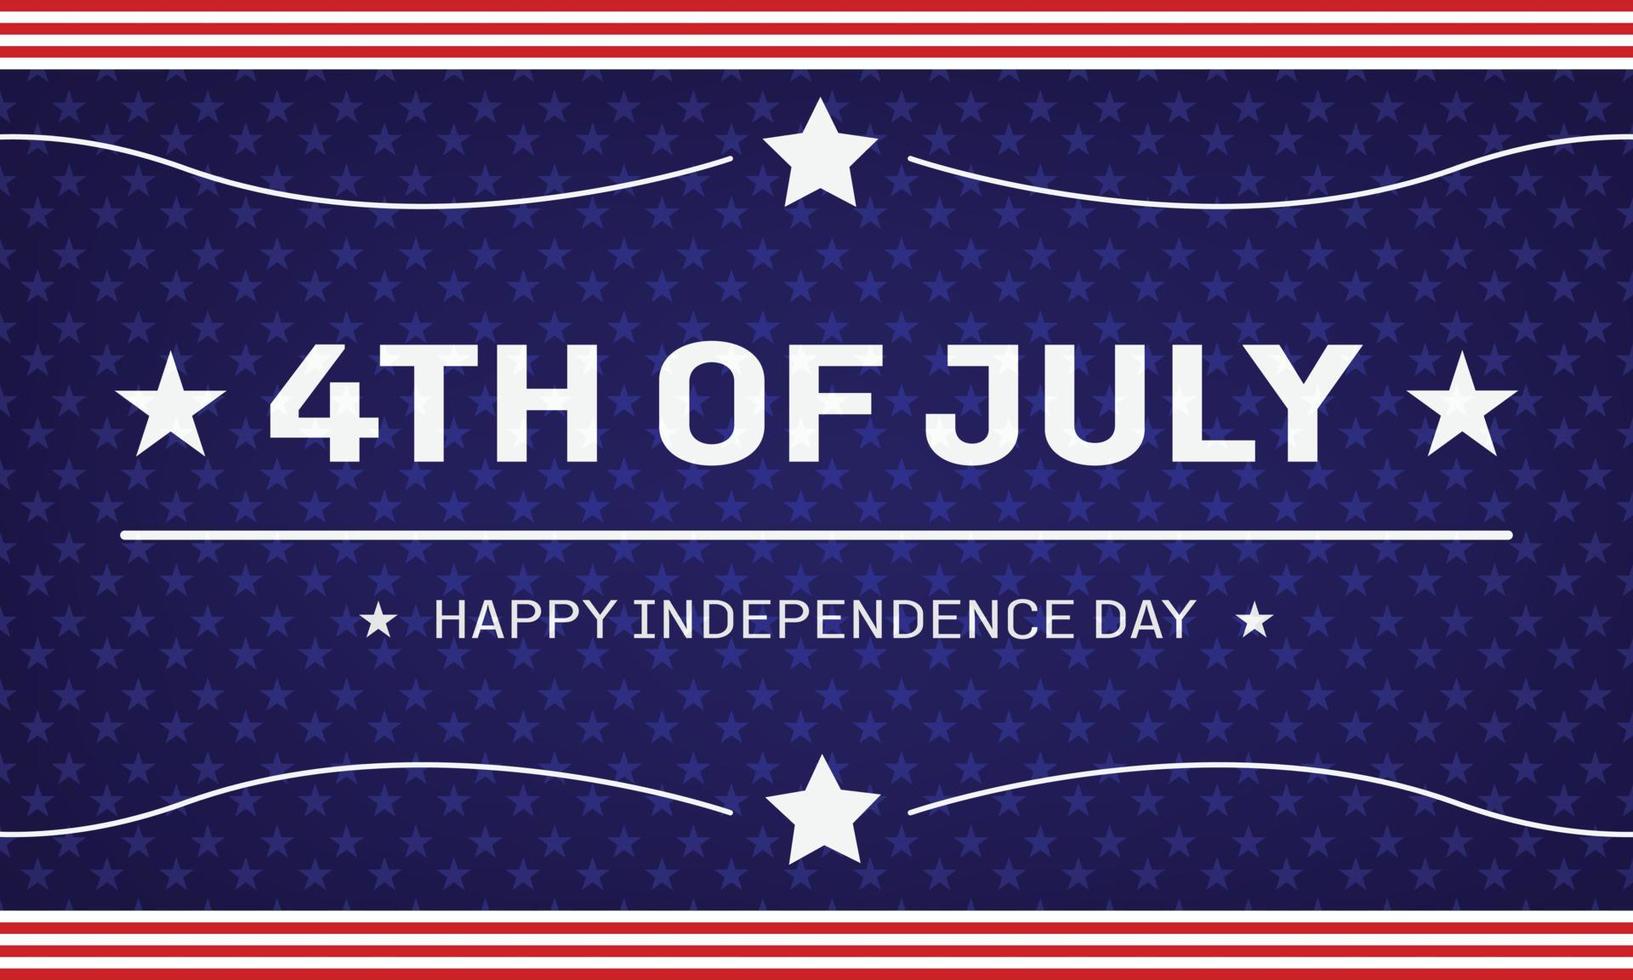 4e van juli onafhankelijkheid dag, gelukkig onafhankelijkheid dag vector